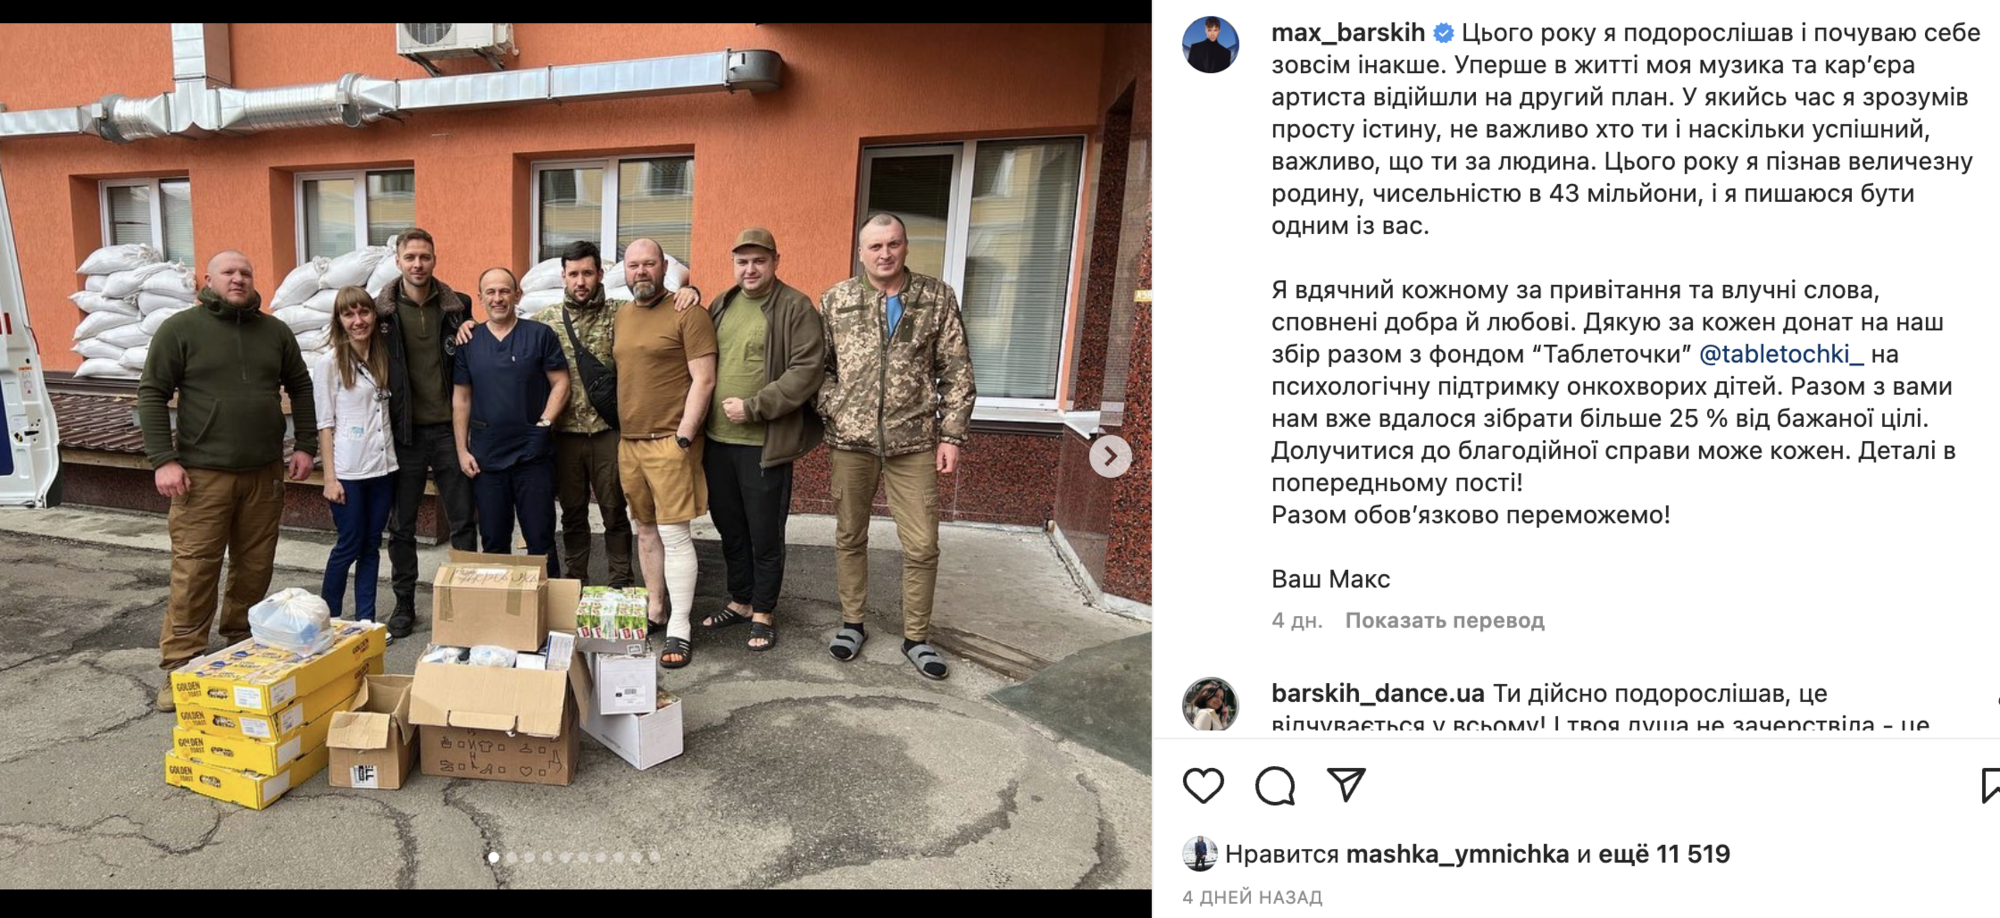 Скандал с Максом Барских: в России возмутились собственным фейком об участии украинца в премии МУЗ ТВ